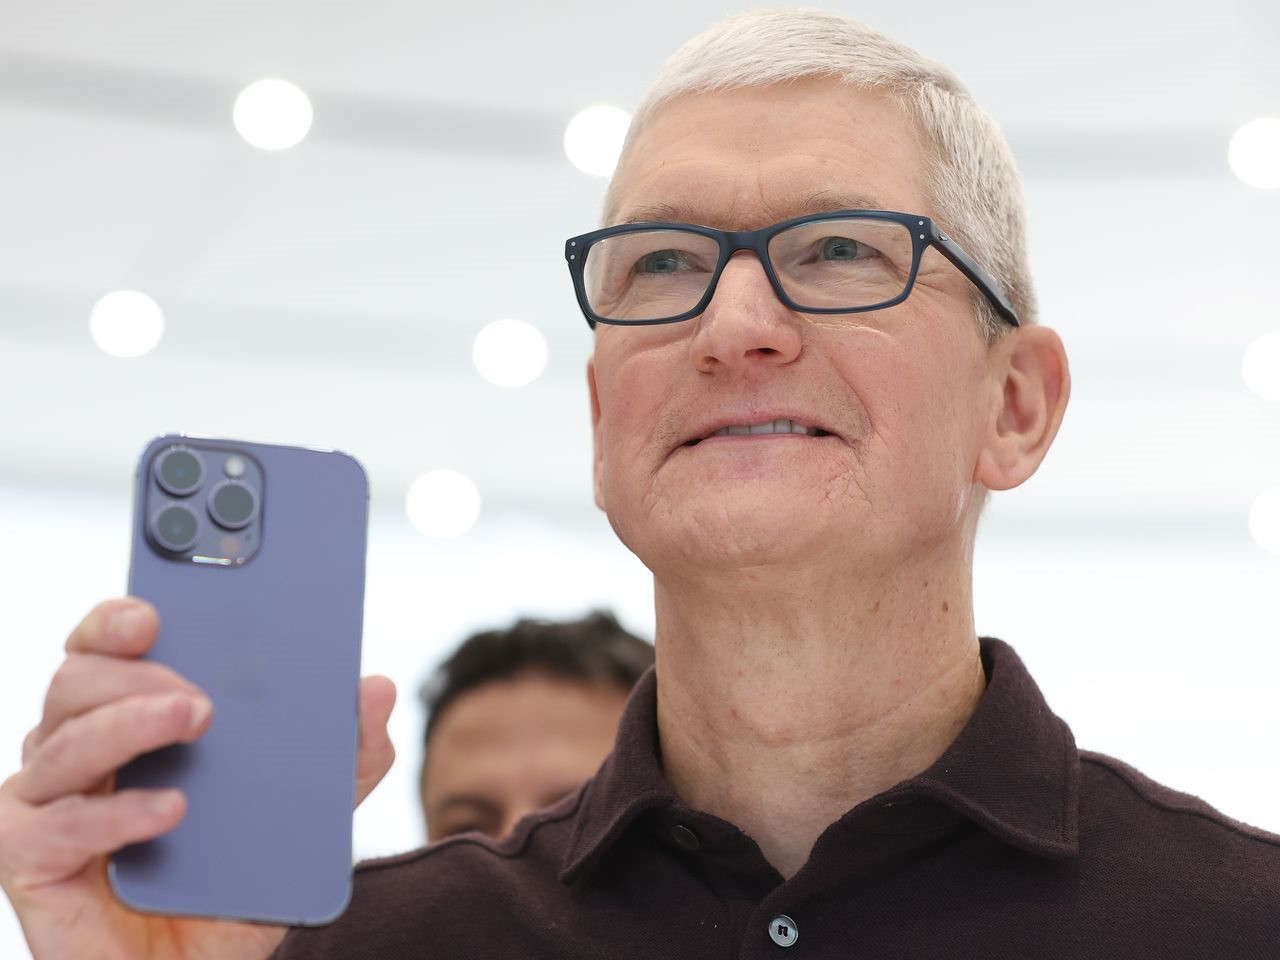 Giá iPhone cao cấp tăng từ 962 USD lên 1.600 USD sau 14 năm, CEO Tim Cook tự tin: ‘Mọi người vẫn sẽ mua sản phẩm của chúng tôi thôi’ - Ảnh 1.